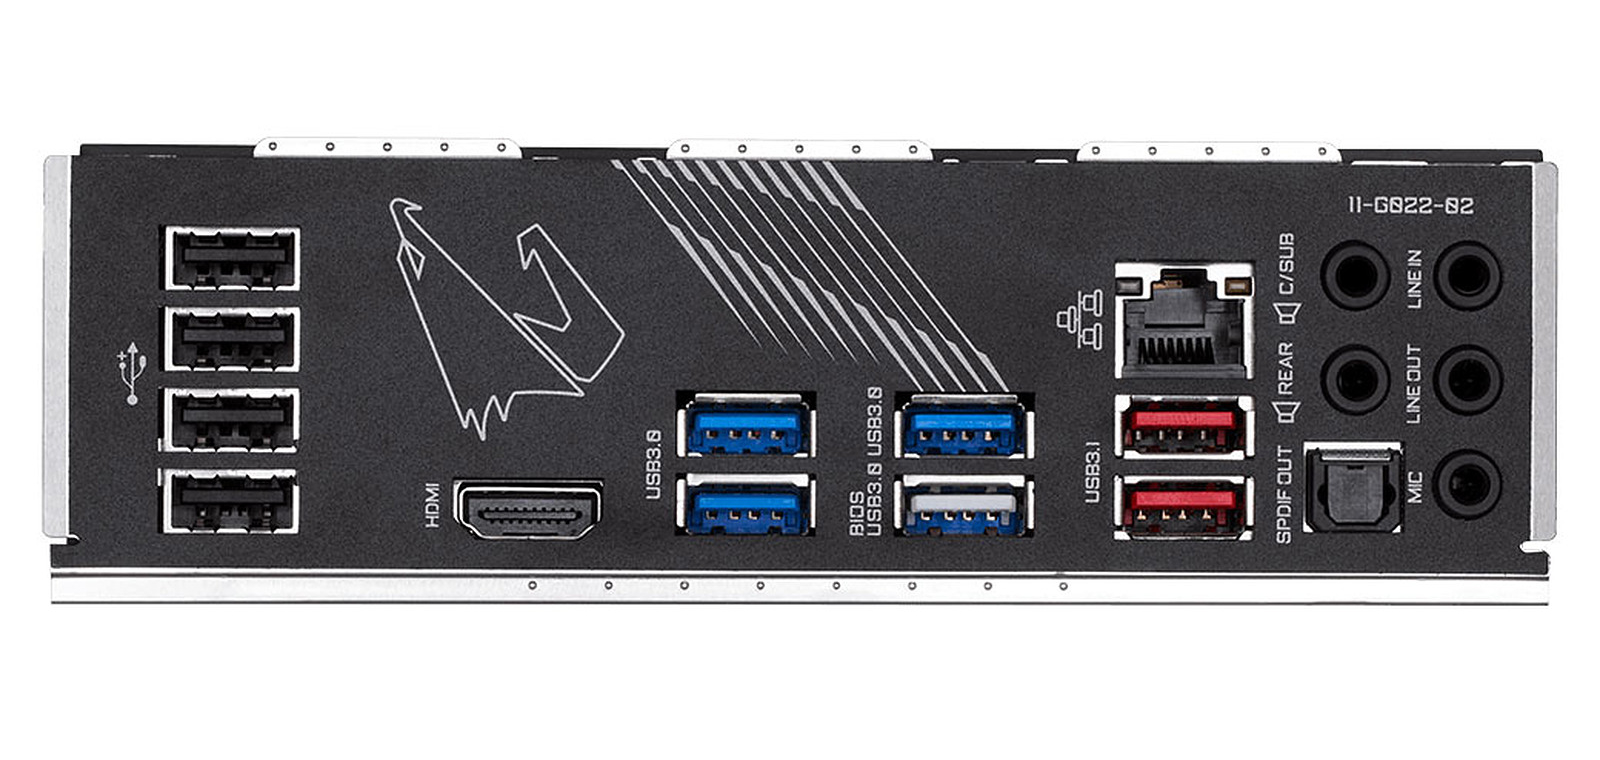 Boîtier SSD M.2 NVMe de StarTech pour SSD PCIe - USB 3.1 de type C de 2e  génération - Boîtier NVMe externe - compatible Thunderbolt 3 